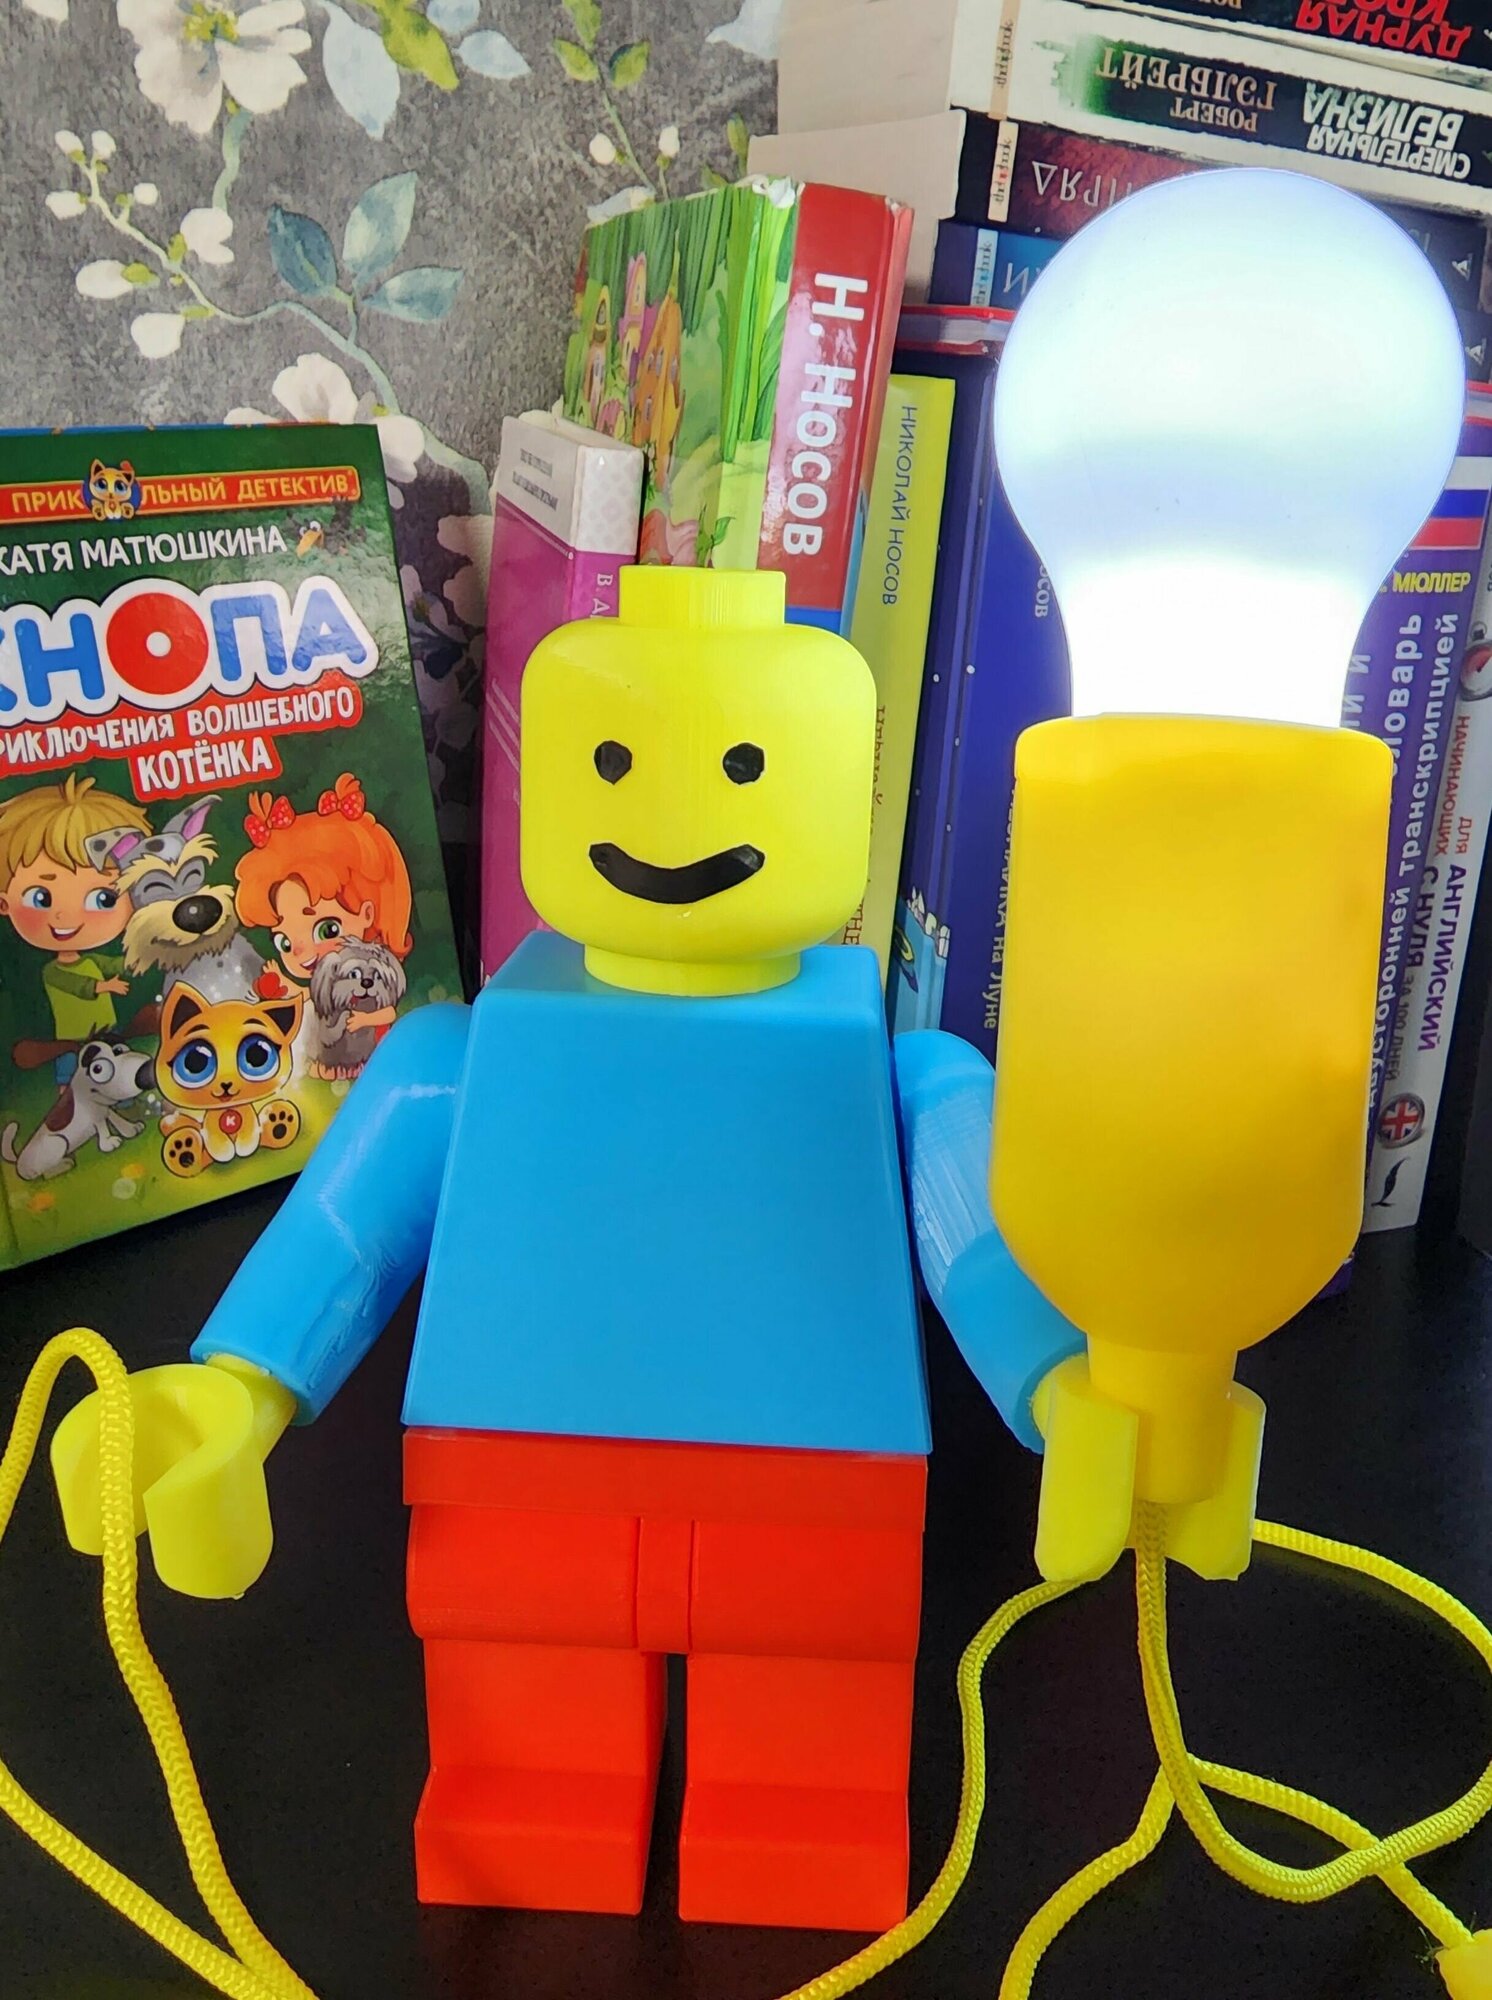 Лампа - ночник: 3 в 1 (лампа, игрушка, фонарик) в виде LEGO/Лего человечка - фотография № 8